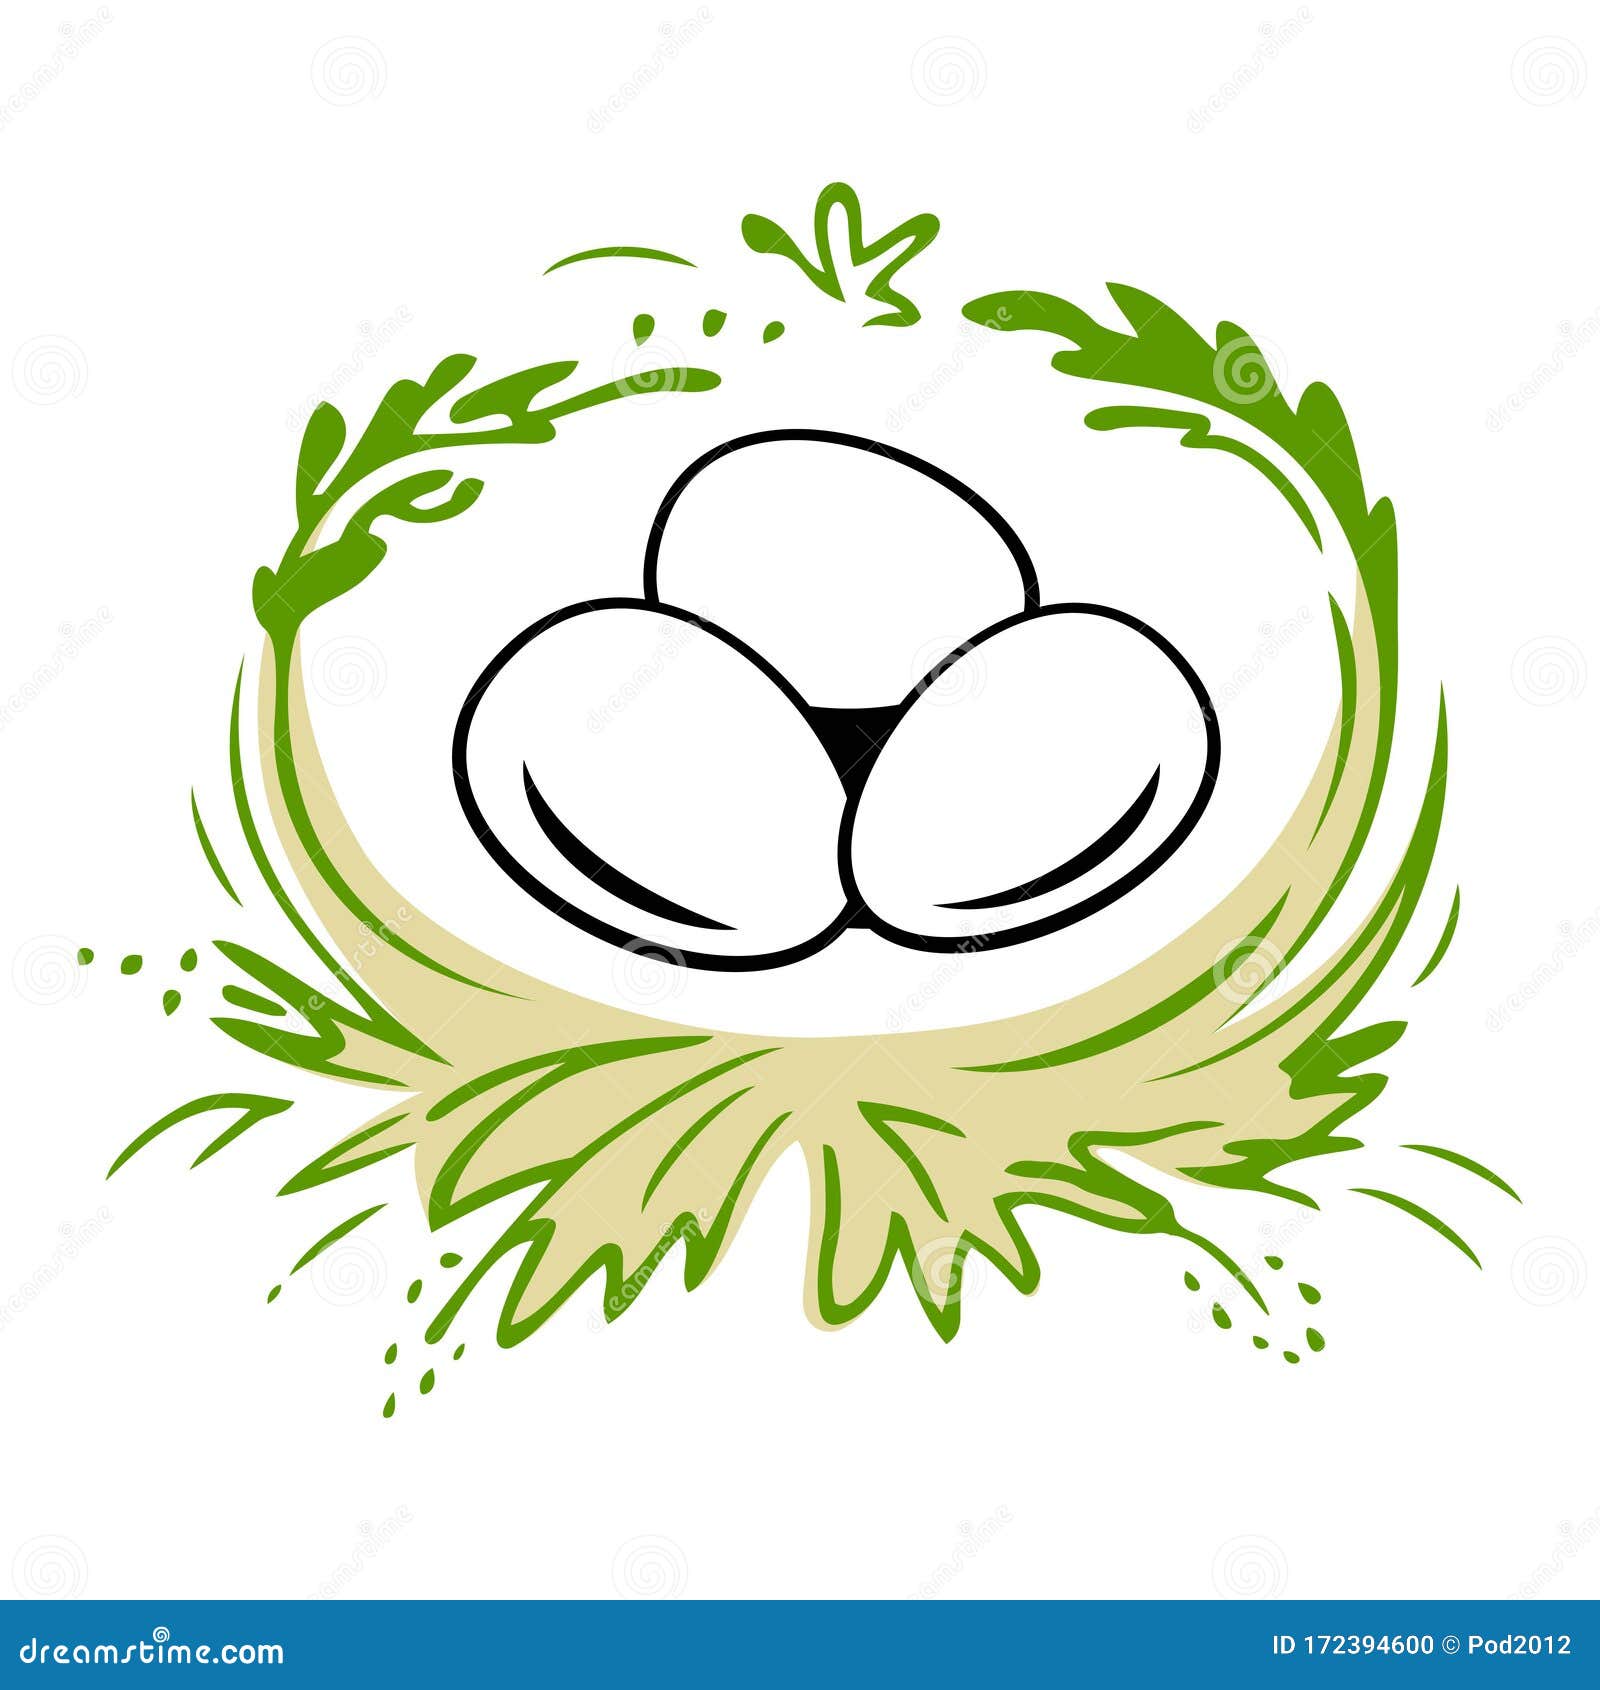 Easter Eggs In The Nest Logo. Stock Vector - Illustration of design